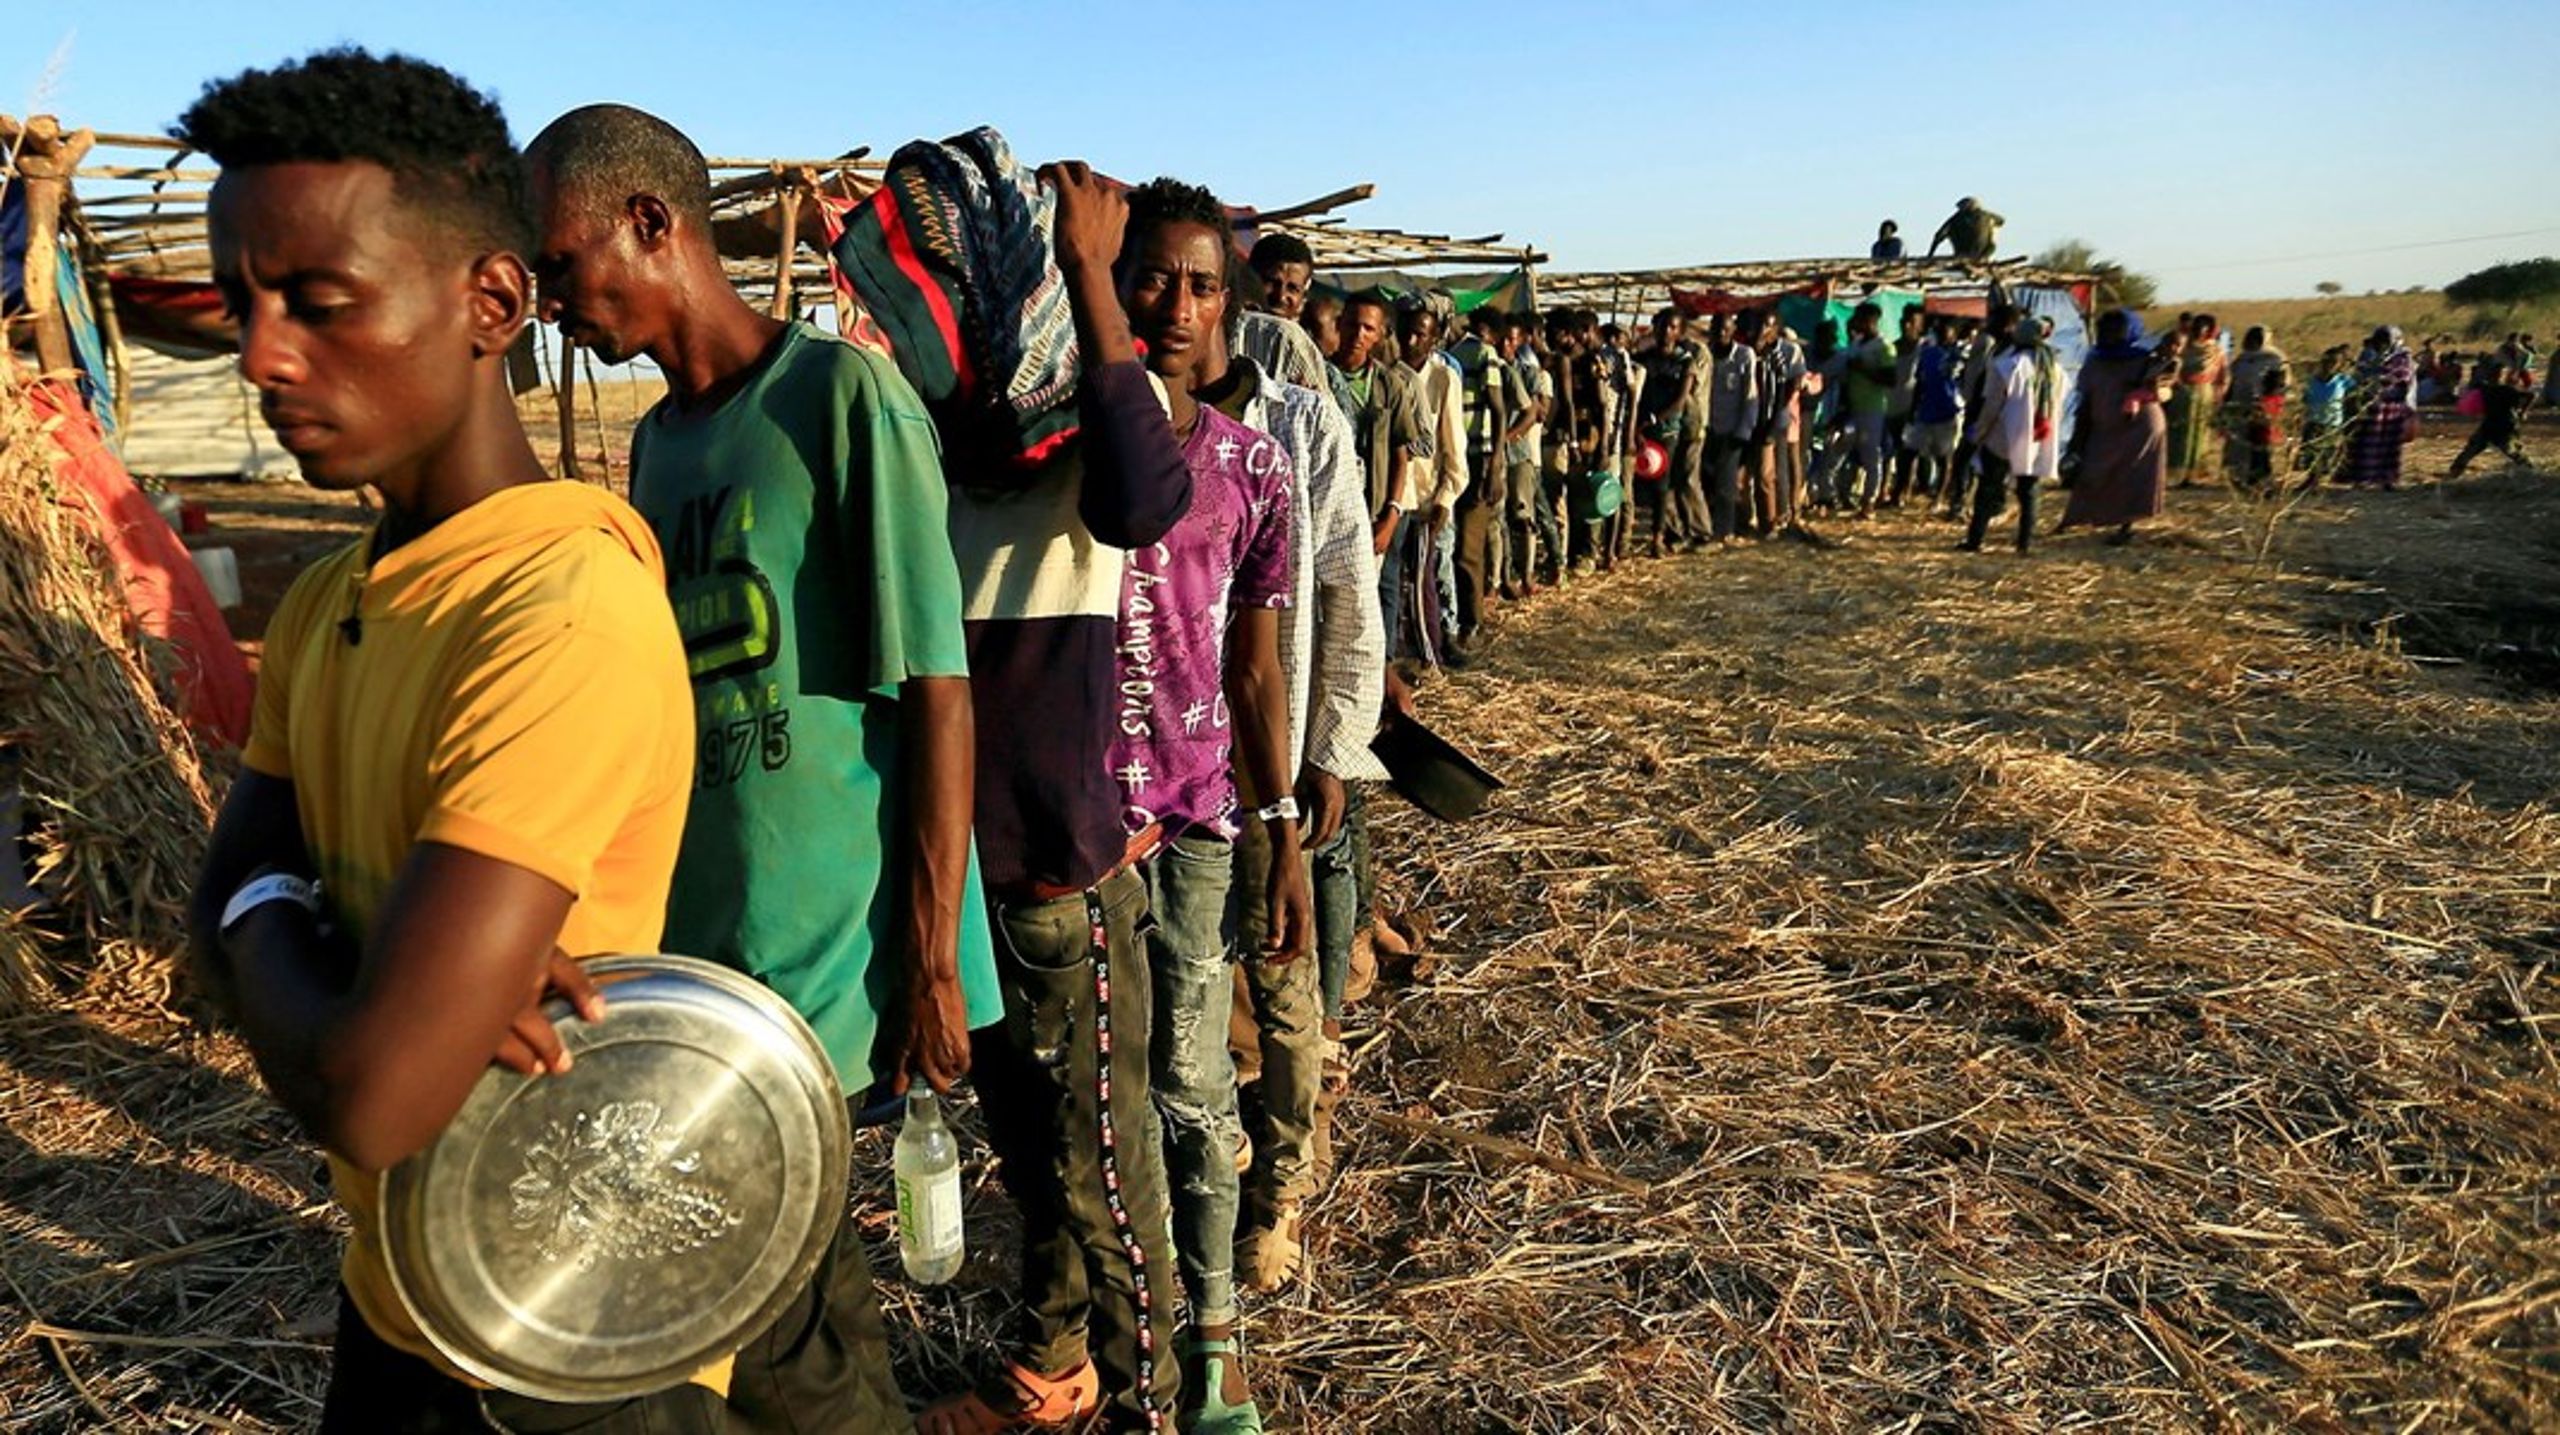 Hundredetusindevis af etiopiere gennemgår hvert år traumatiserende rejser gennem lande som Somalia, krigshærgede Yemen og ind i farlige Saudi Arabien, skriver&nbsp;Adam Fejerskov.